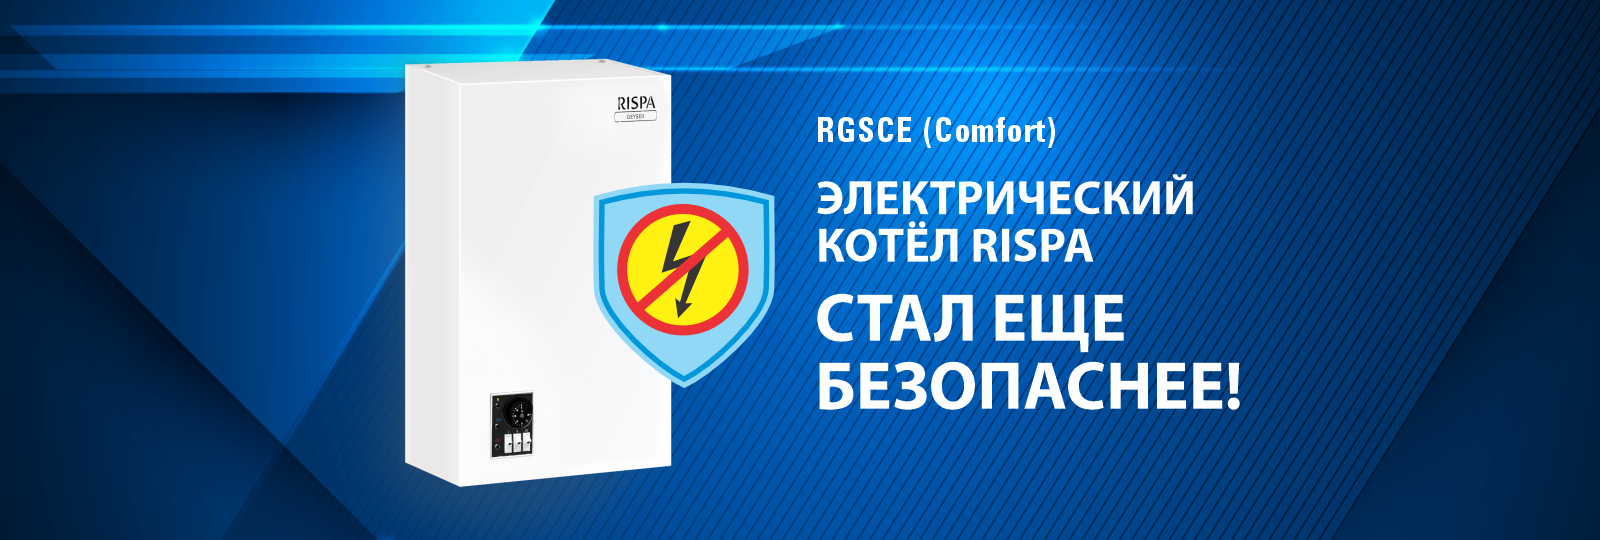 Rispa Comfort: Новая гарантия безопасности в электрокотлах